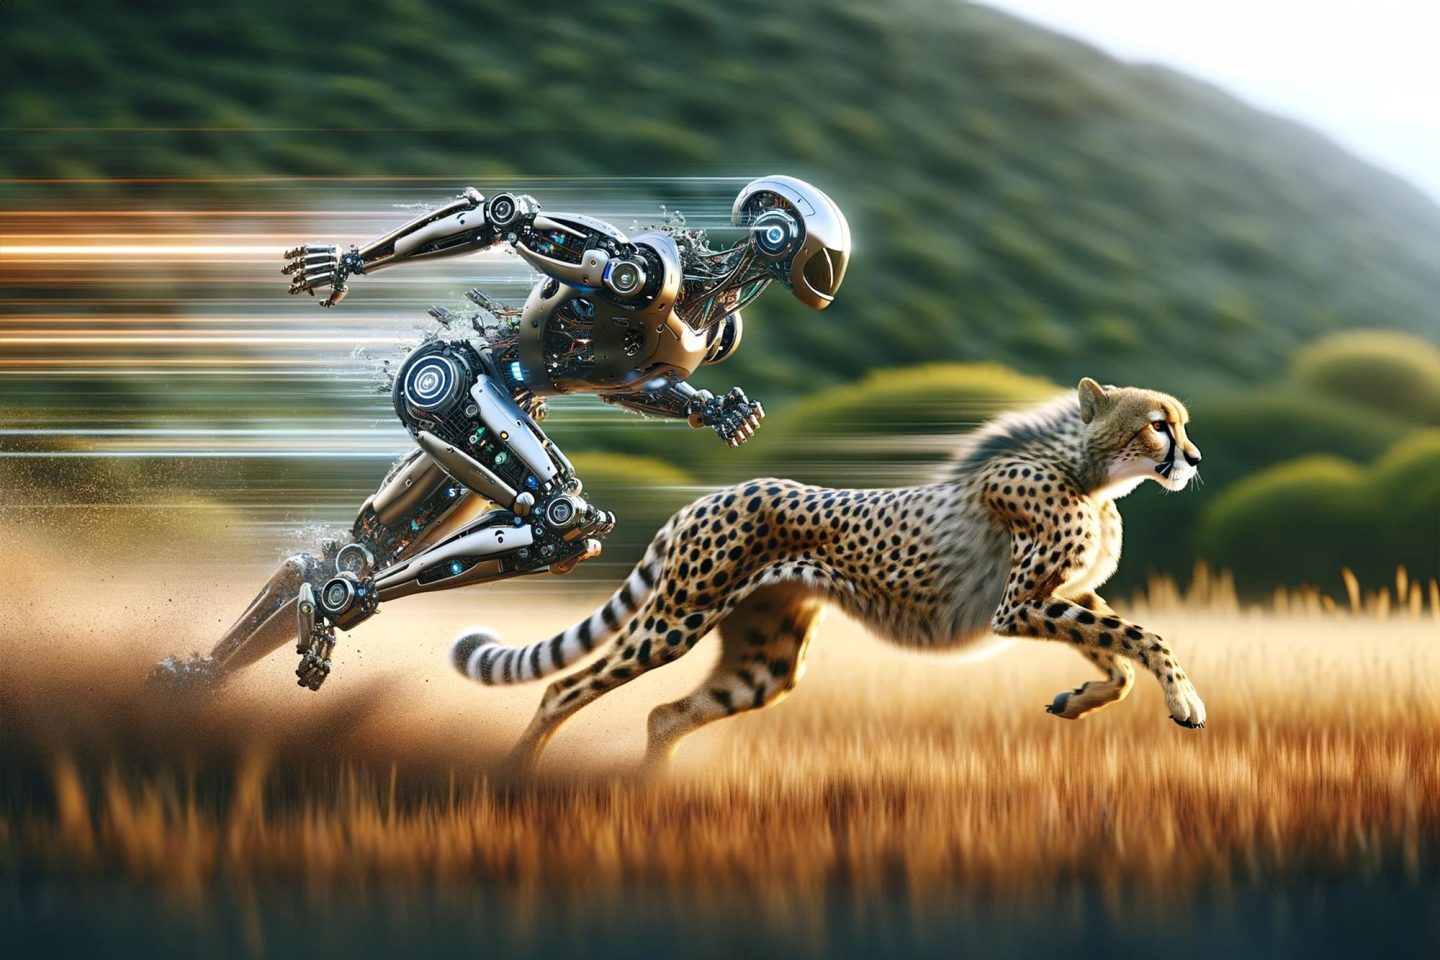 لماذا لا تستطيع الروبوتات الحديثة الركض أسرع من الحيوانات السريعة؟